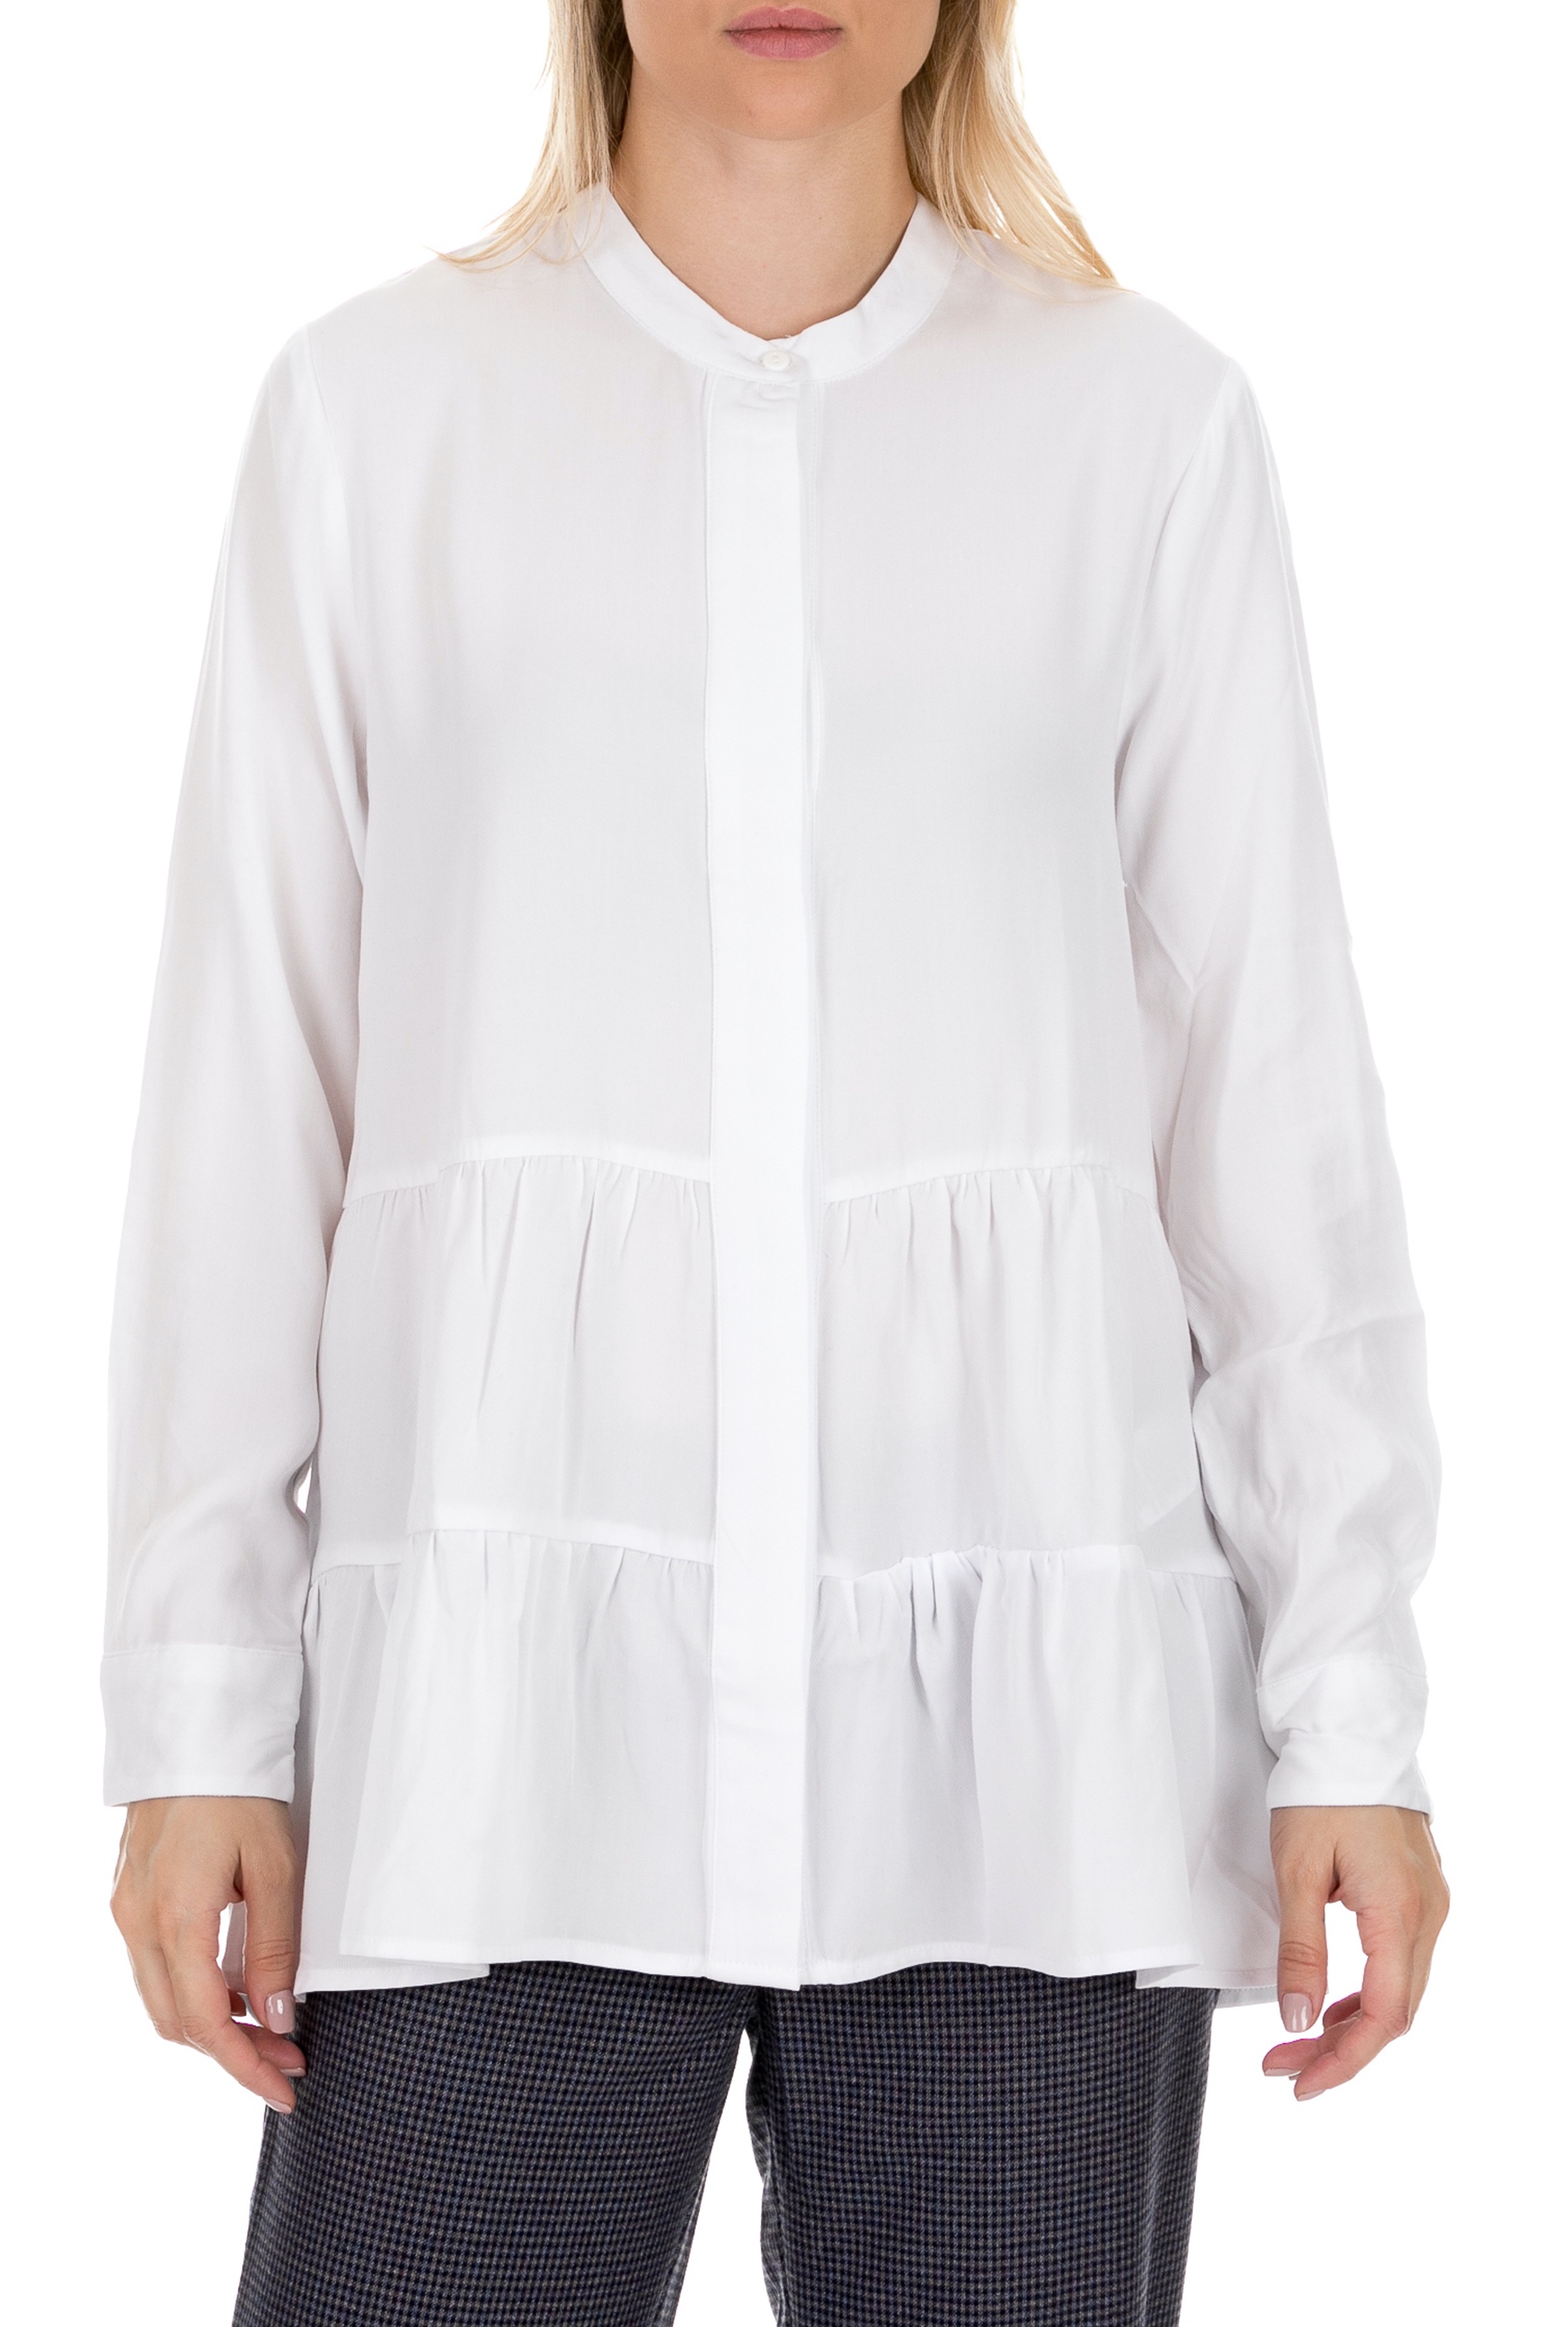 COTTON CANDY Γυναικεία πουκαμίσα COTTON CANDY PREMIUM SELECTION λευκή